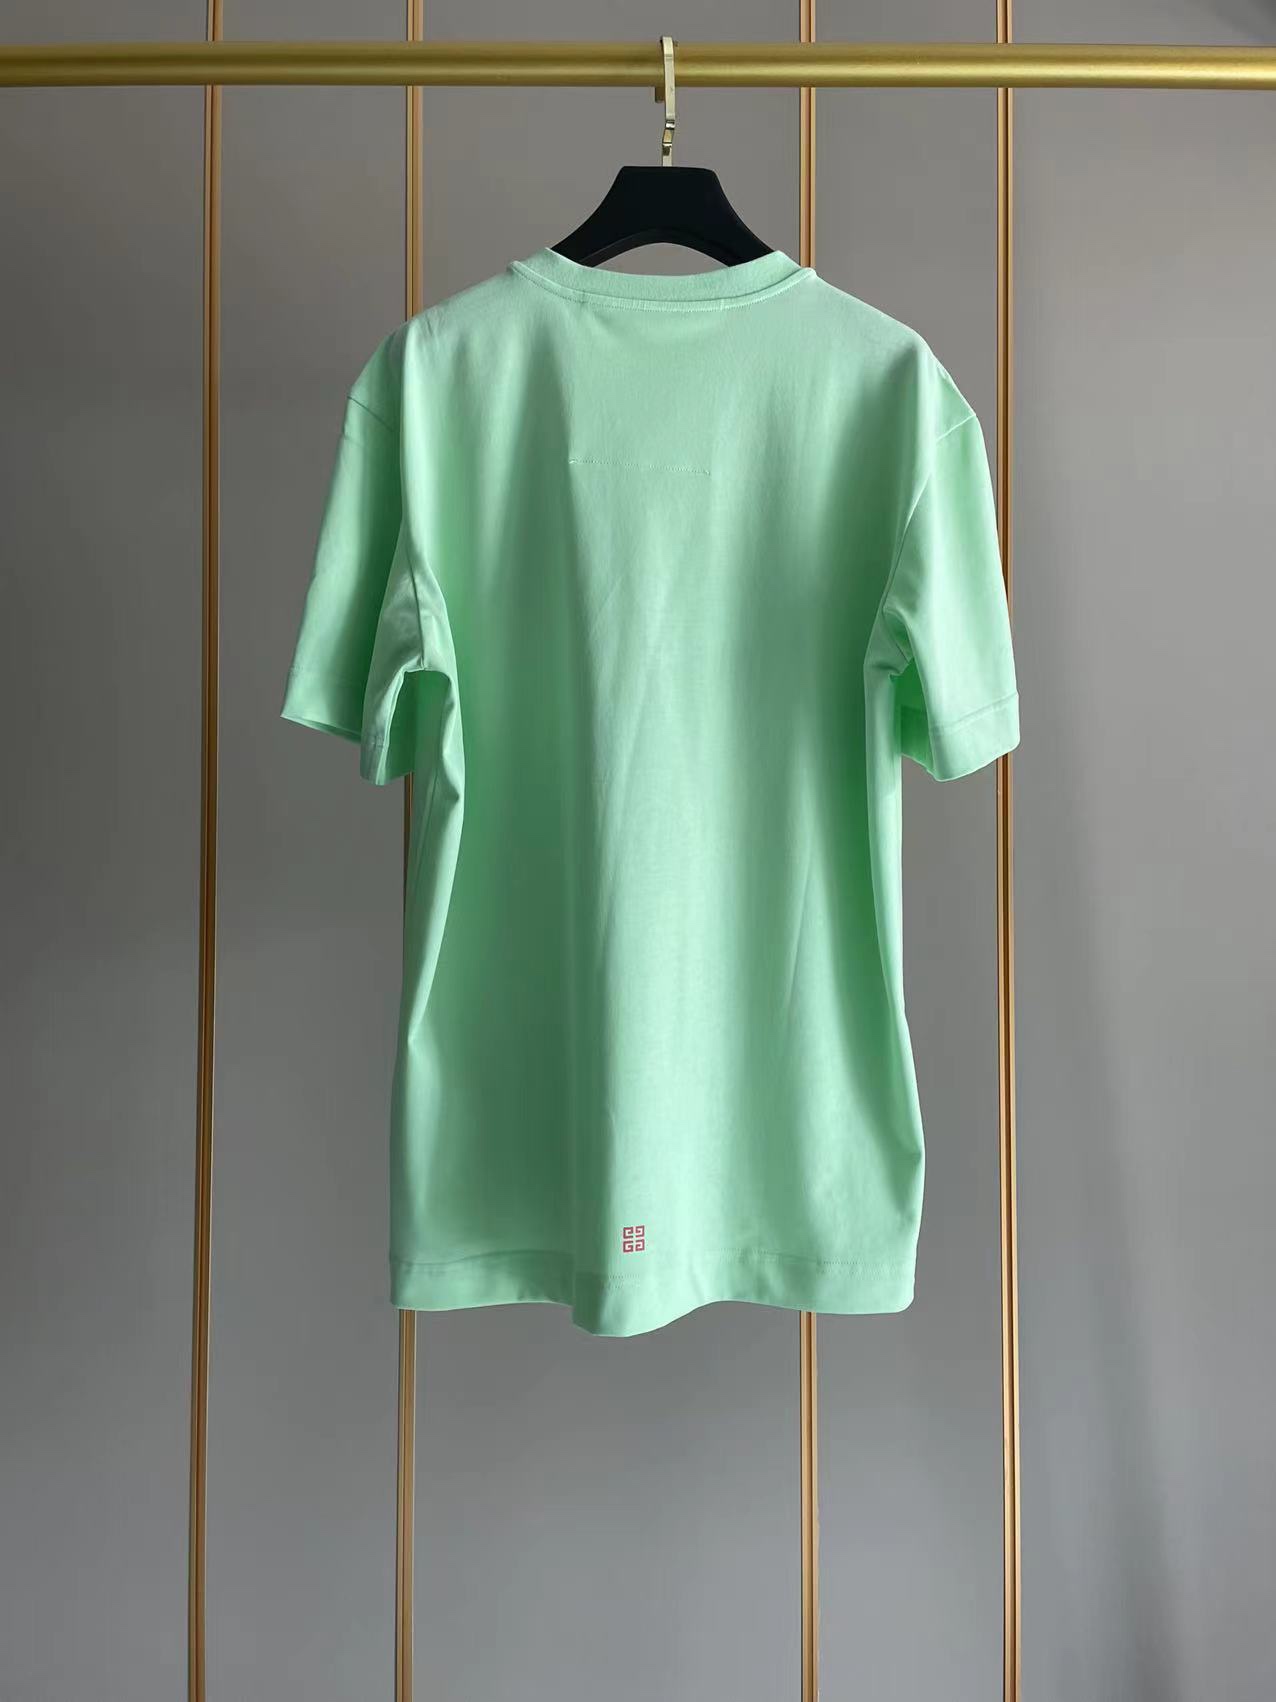 限定セール低価 ジバンシィトートバッグ激安通販 純綿 Tシャツ 半袖 トップス シンプル ロックプリント 大人気 3色可選 グリーン_2